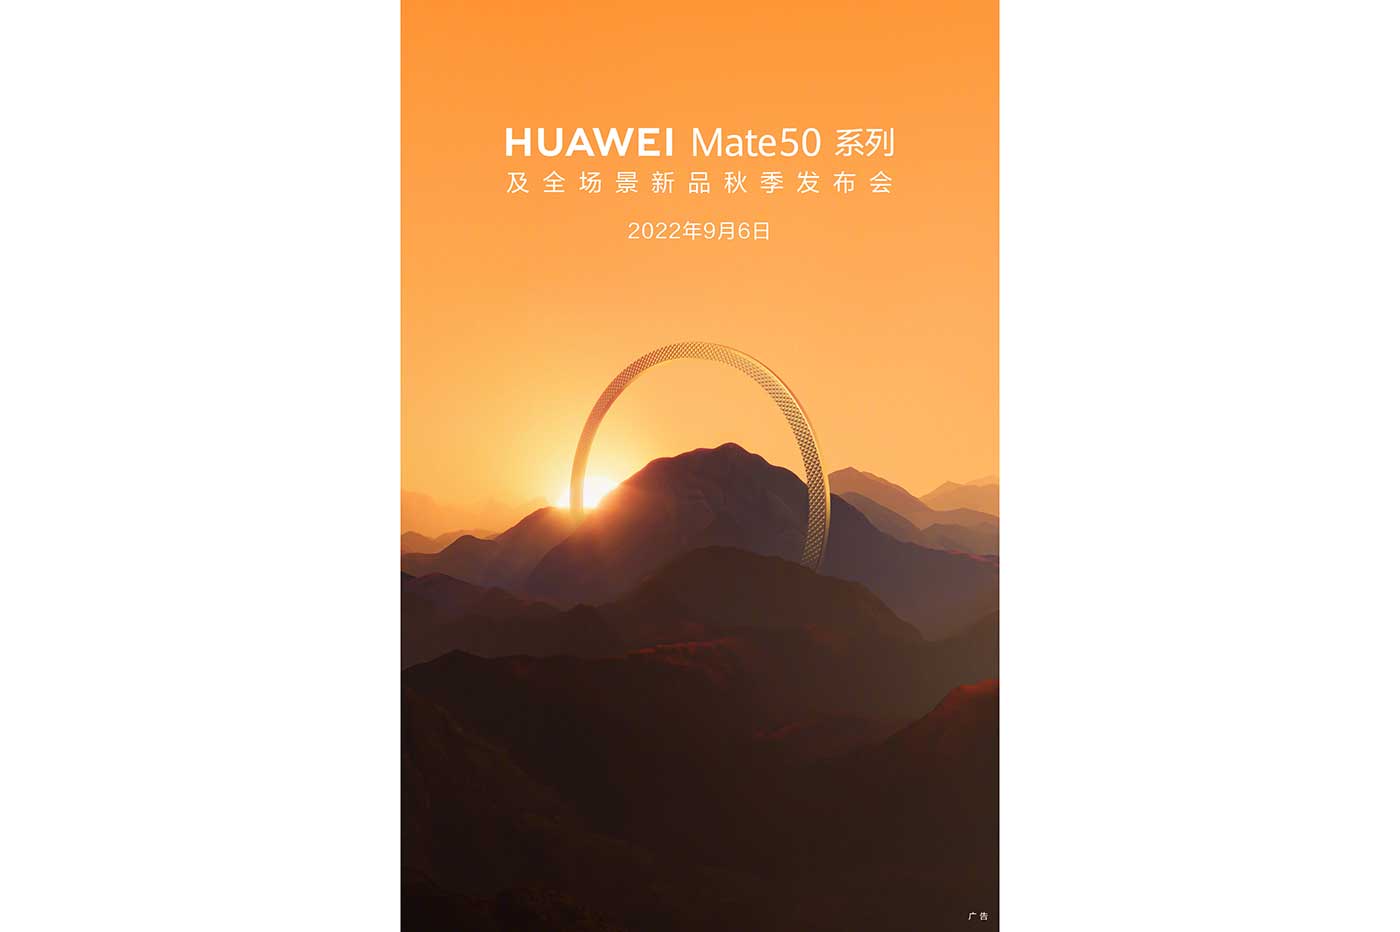 Huawei Mate 50 Weibo